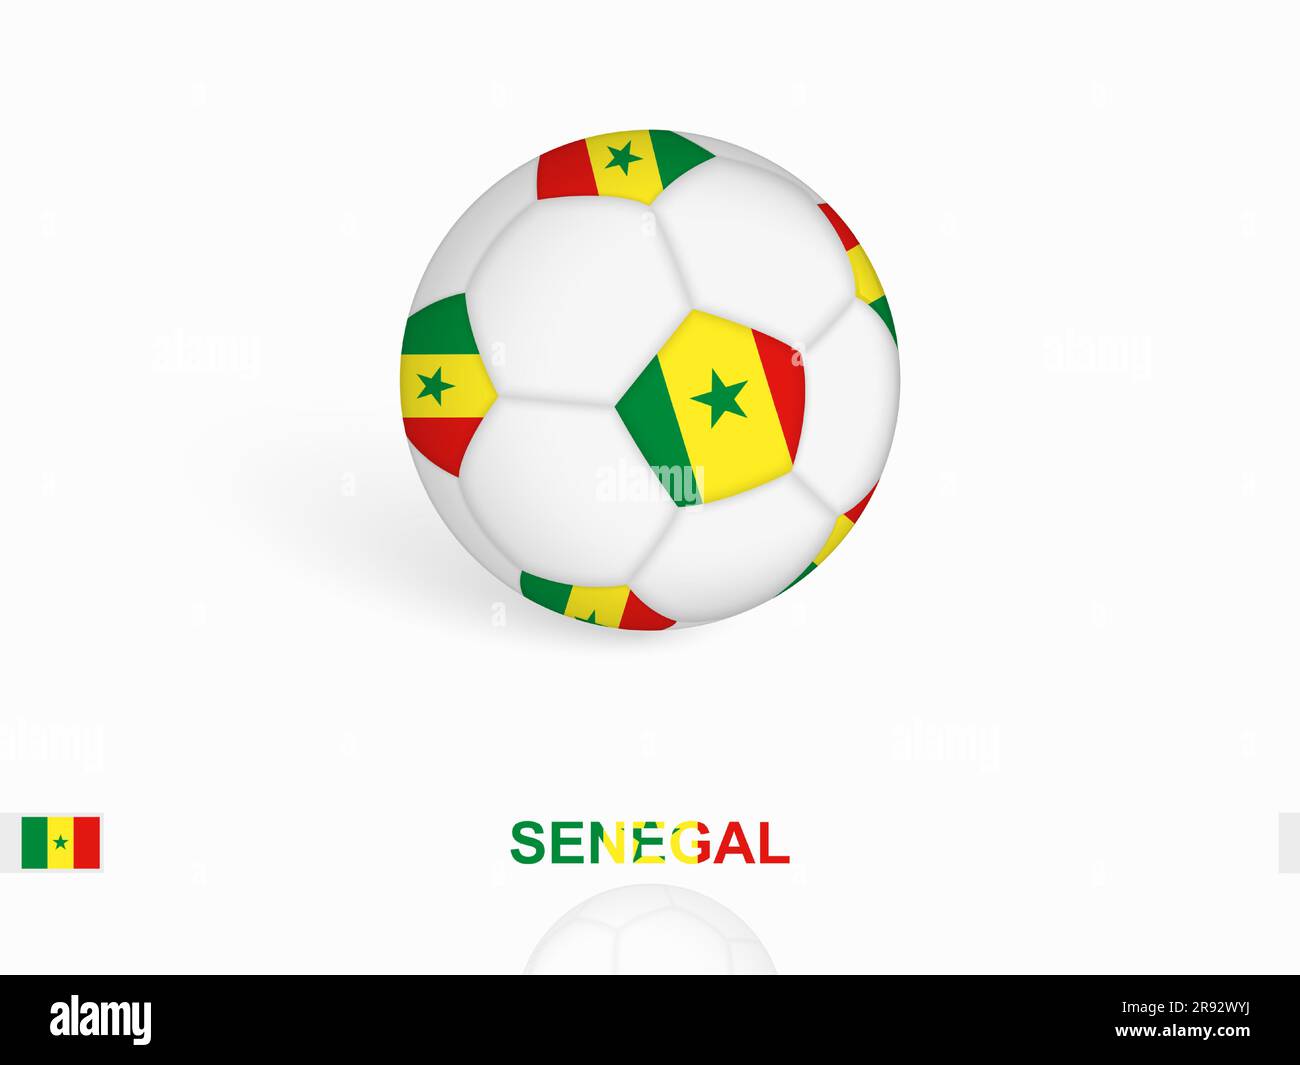 Ballon de football avec drapeau du Sénégal, équipement de sport de football. Illustration vectorielle. Illustration de Vecteur